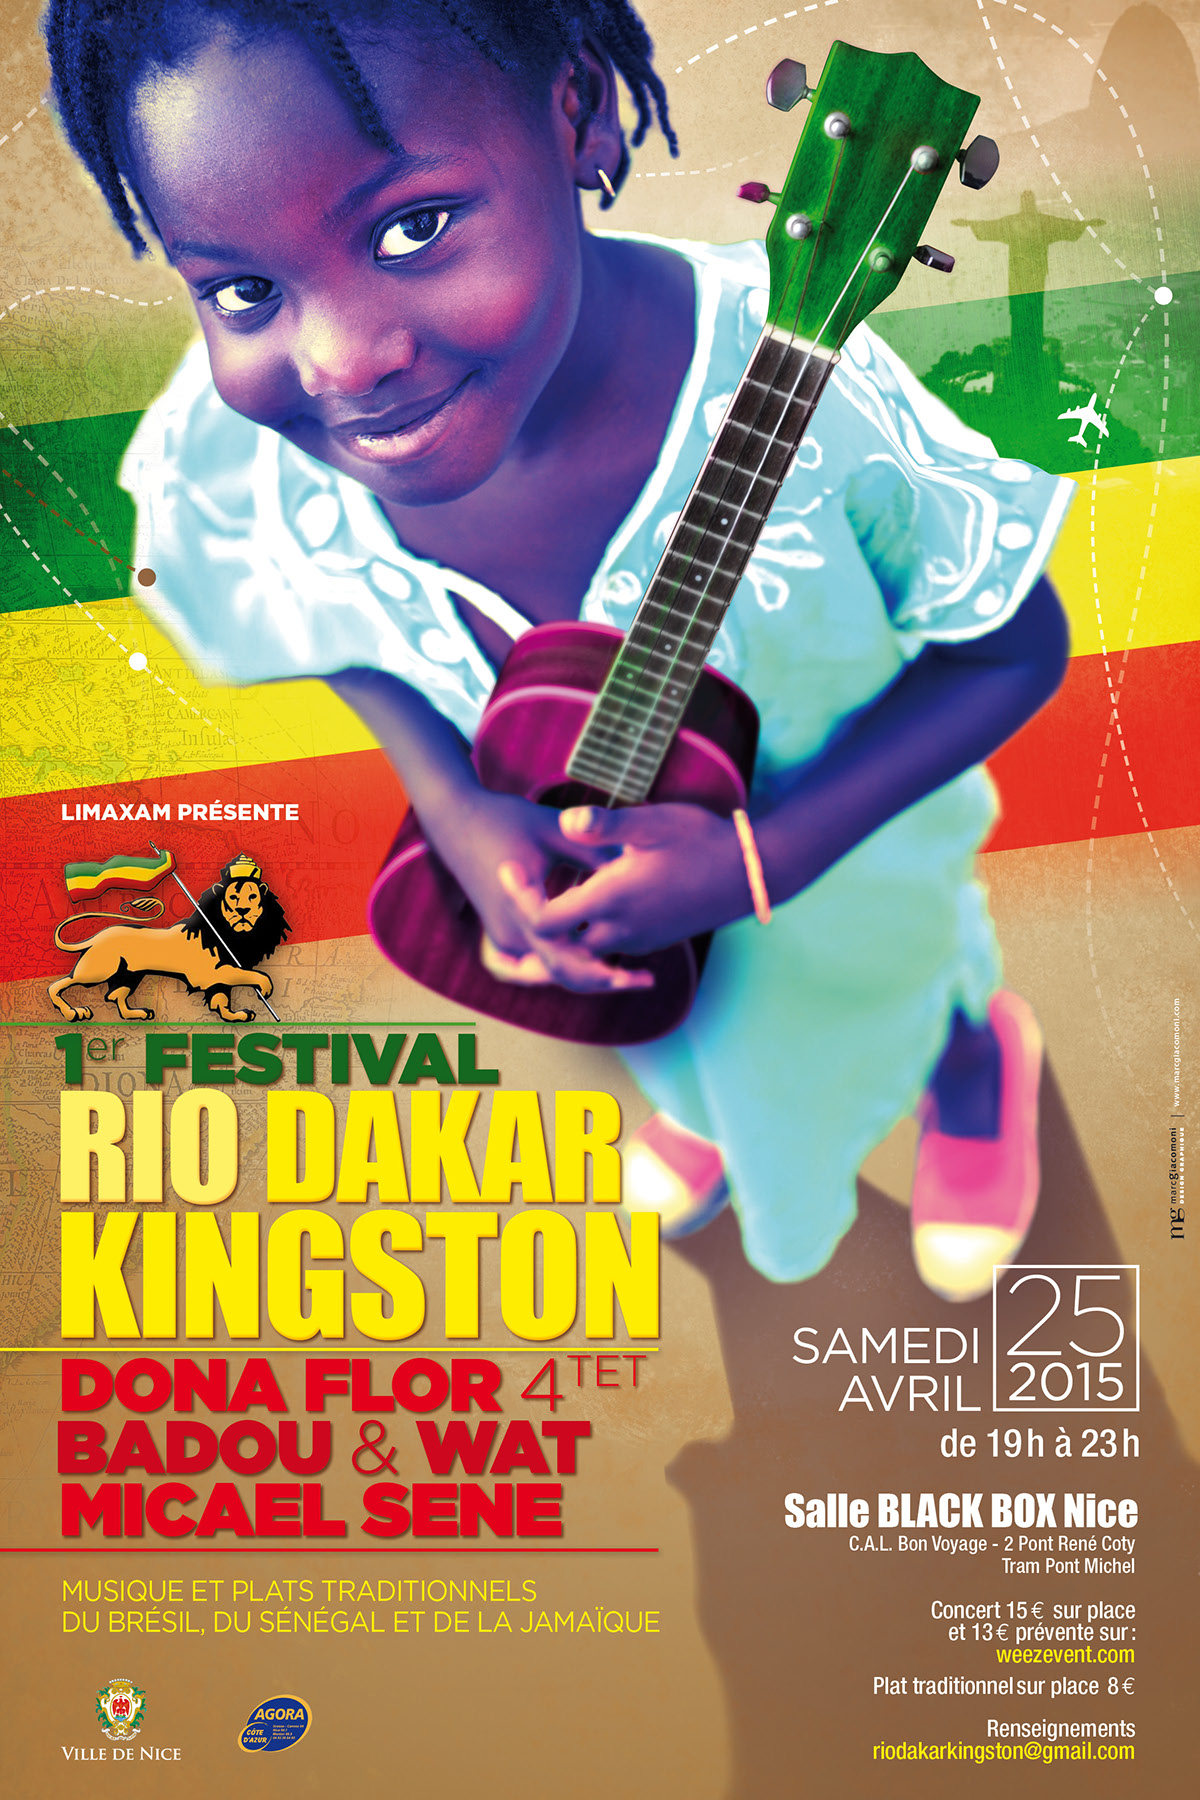 1er Festival Rio Dakar Kingston Badou Mandiang affiche concert reggae musique africaine afrique Culture africaine Métissage mieux-vivre ensemble